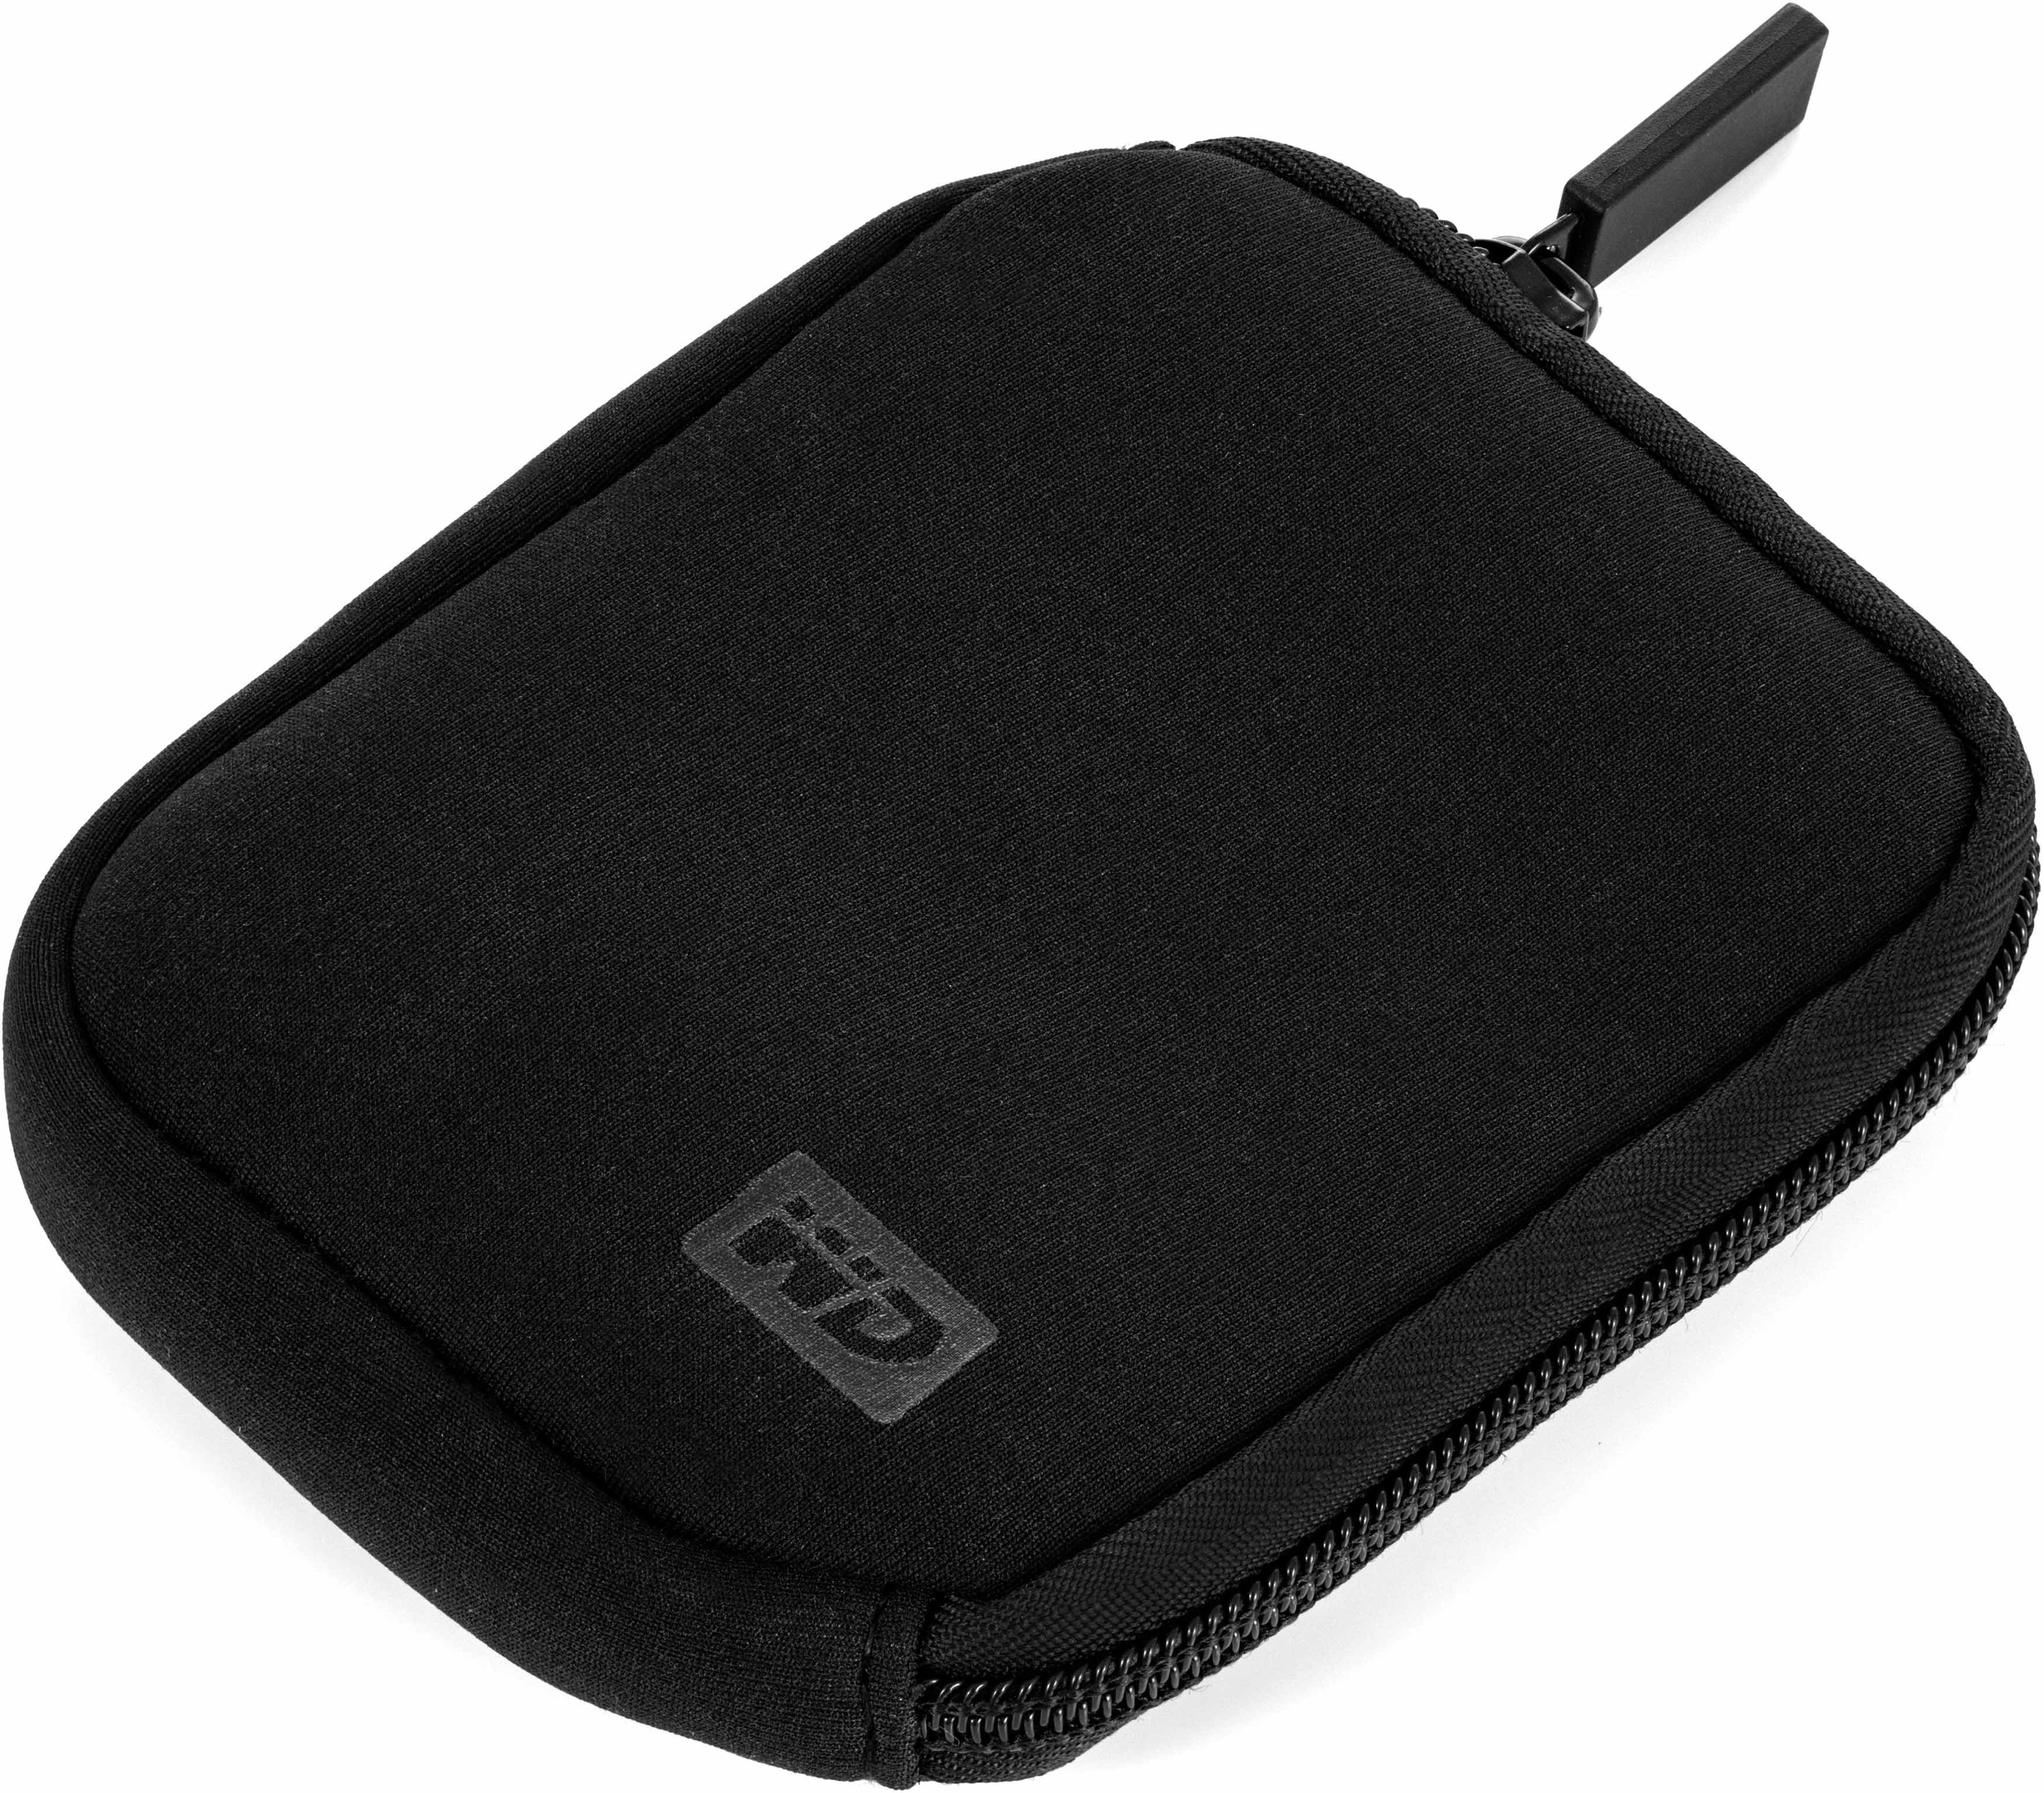 Western Digital Festplattentasche (für 2,5" Festplatten), zur sicheren Aufbewahrung von SSDs / HDDs, Farbe schwarz